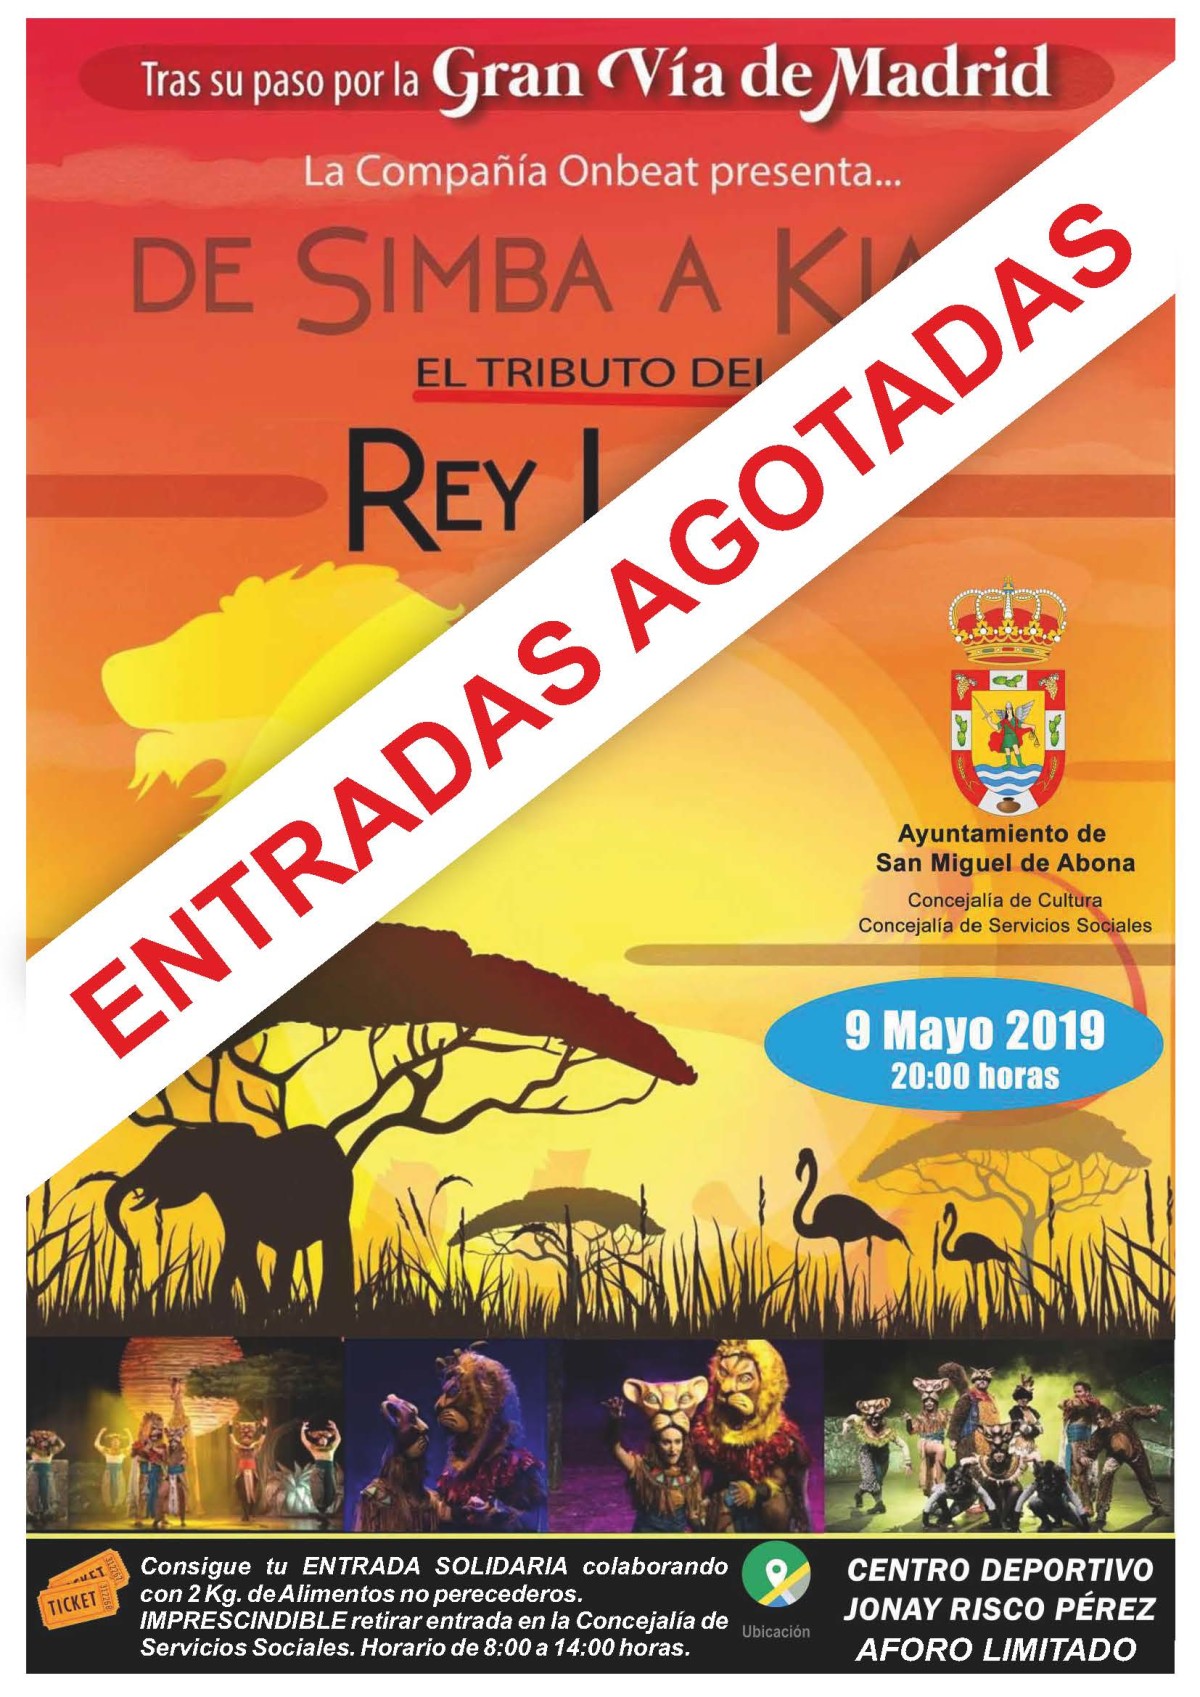 San Miguel de Abona acoge este jueves el concierto “De Symba a Kiara, tributo al Rey León”